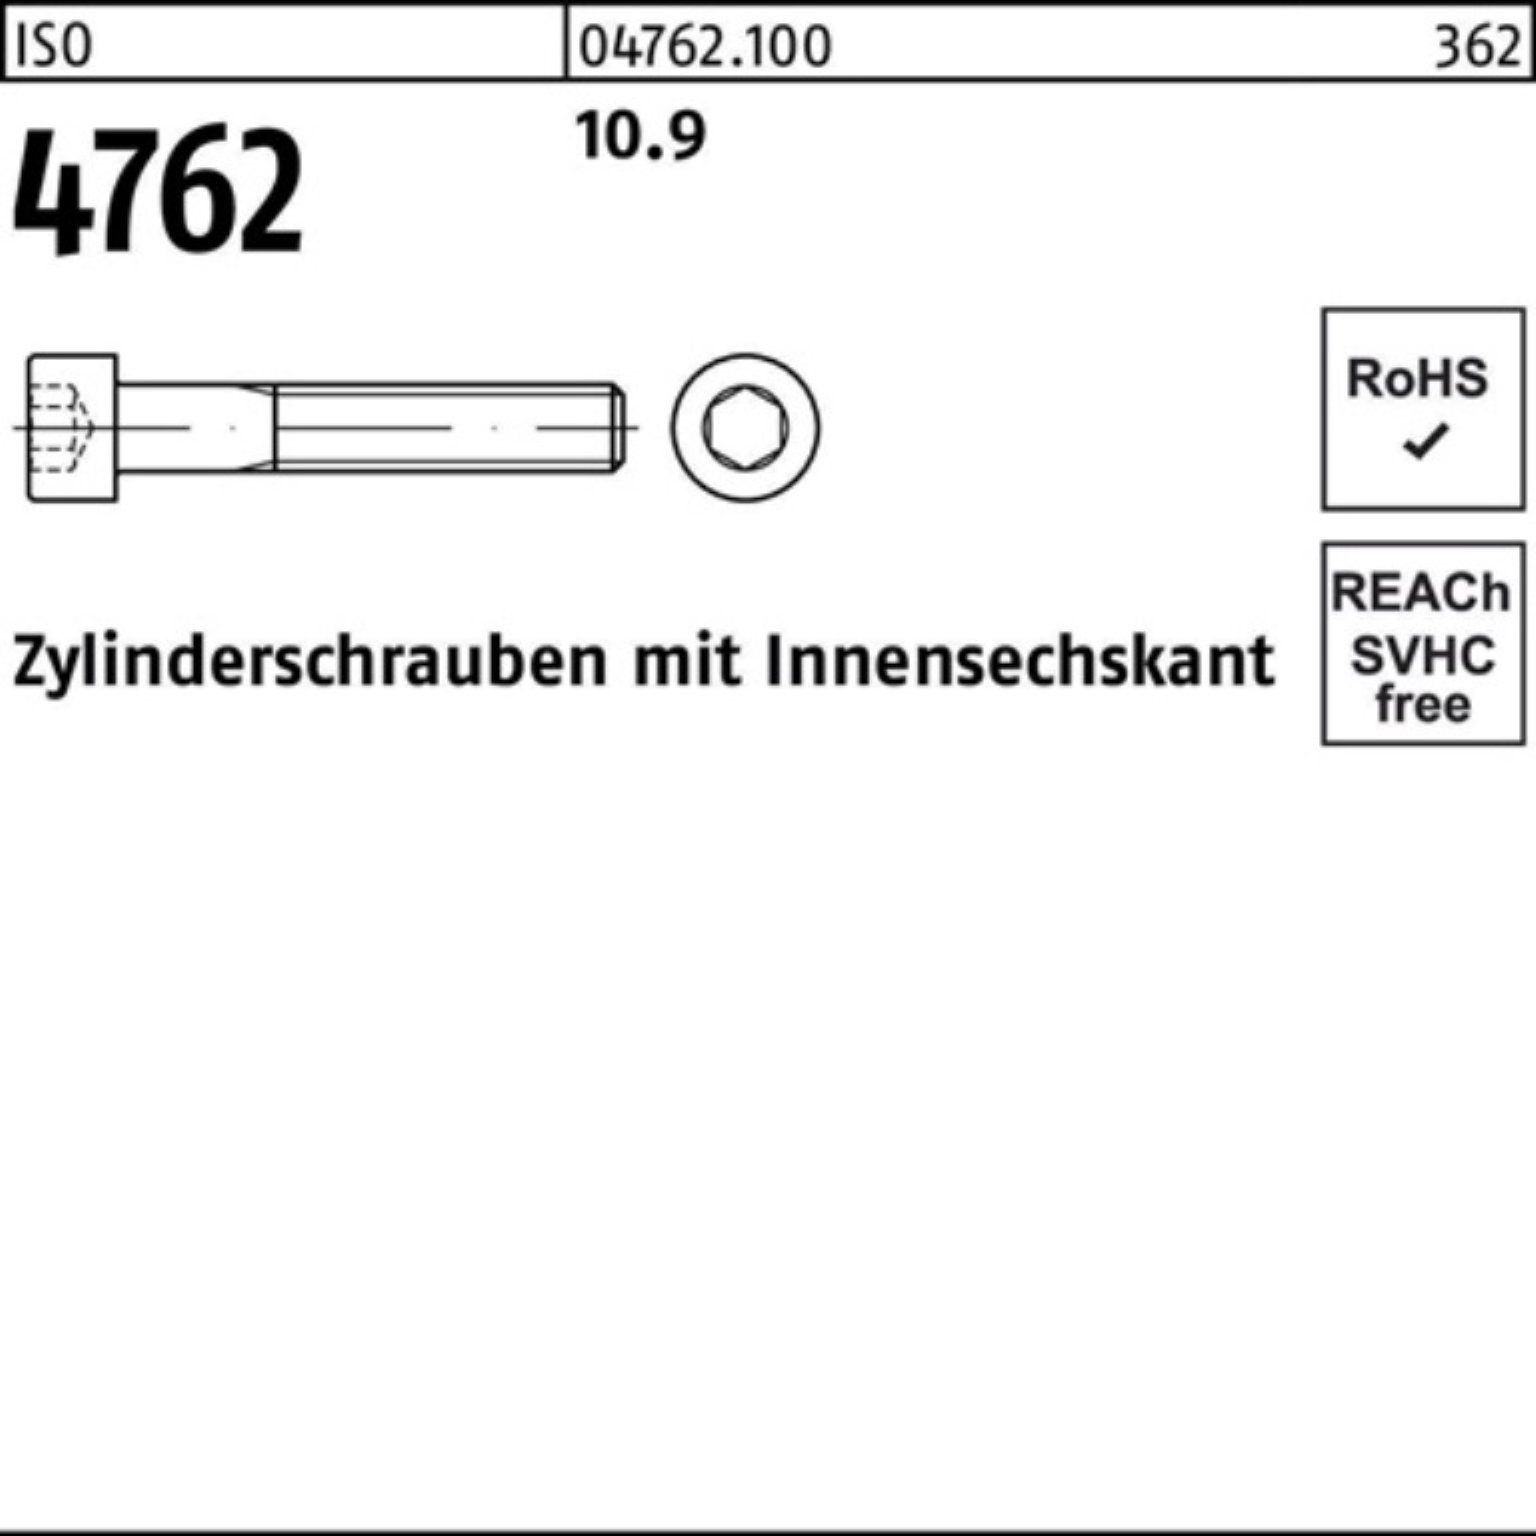 Innen-6kt Zylinderschraube Zylinderschraube Reyher 100er M16x 4762 Stück ISO 250 Pack 25 10.9